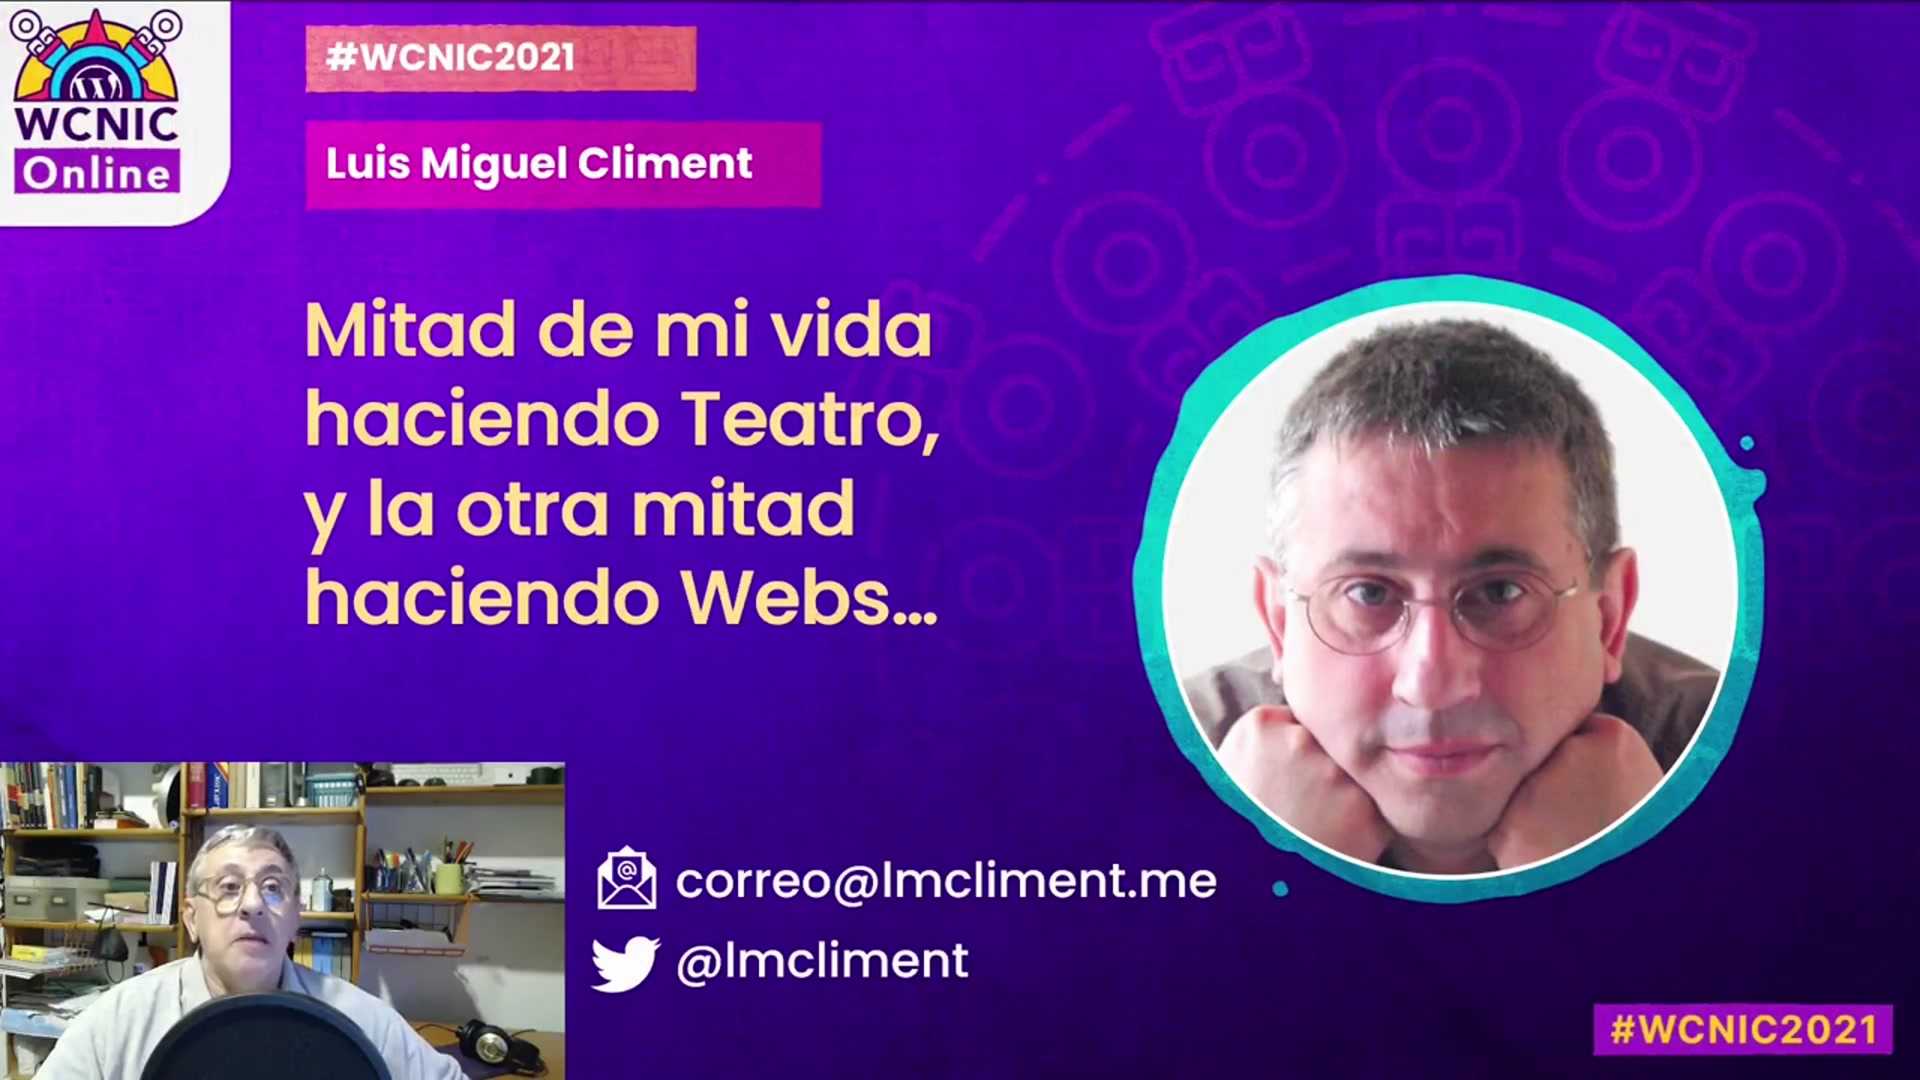 Luis Miguel Climent: Tips para preparar una charla en vídeo (grabada o en directo)